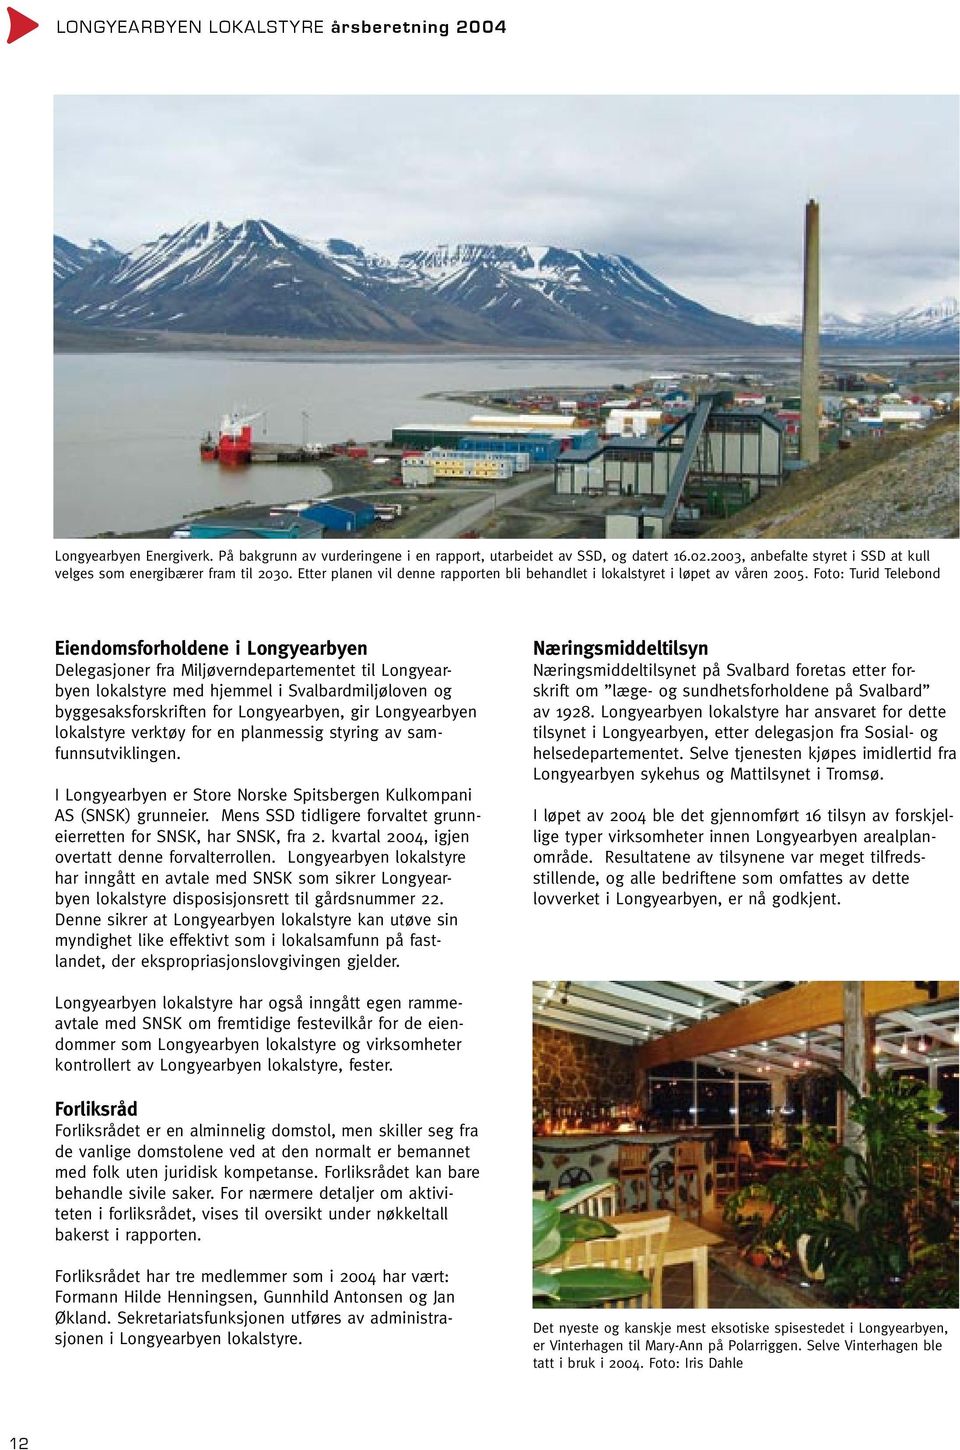 Foto: Turid Telebond Eiendomsforholdene i Longyearbyen Delegasjoner fra Miljøverndepartementet til Longyearbyen lokalstyre med hjemmel i Svalbardmiljøloven og byggesaksforskriften for Longyearbyen,